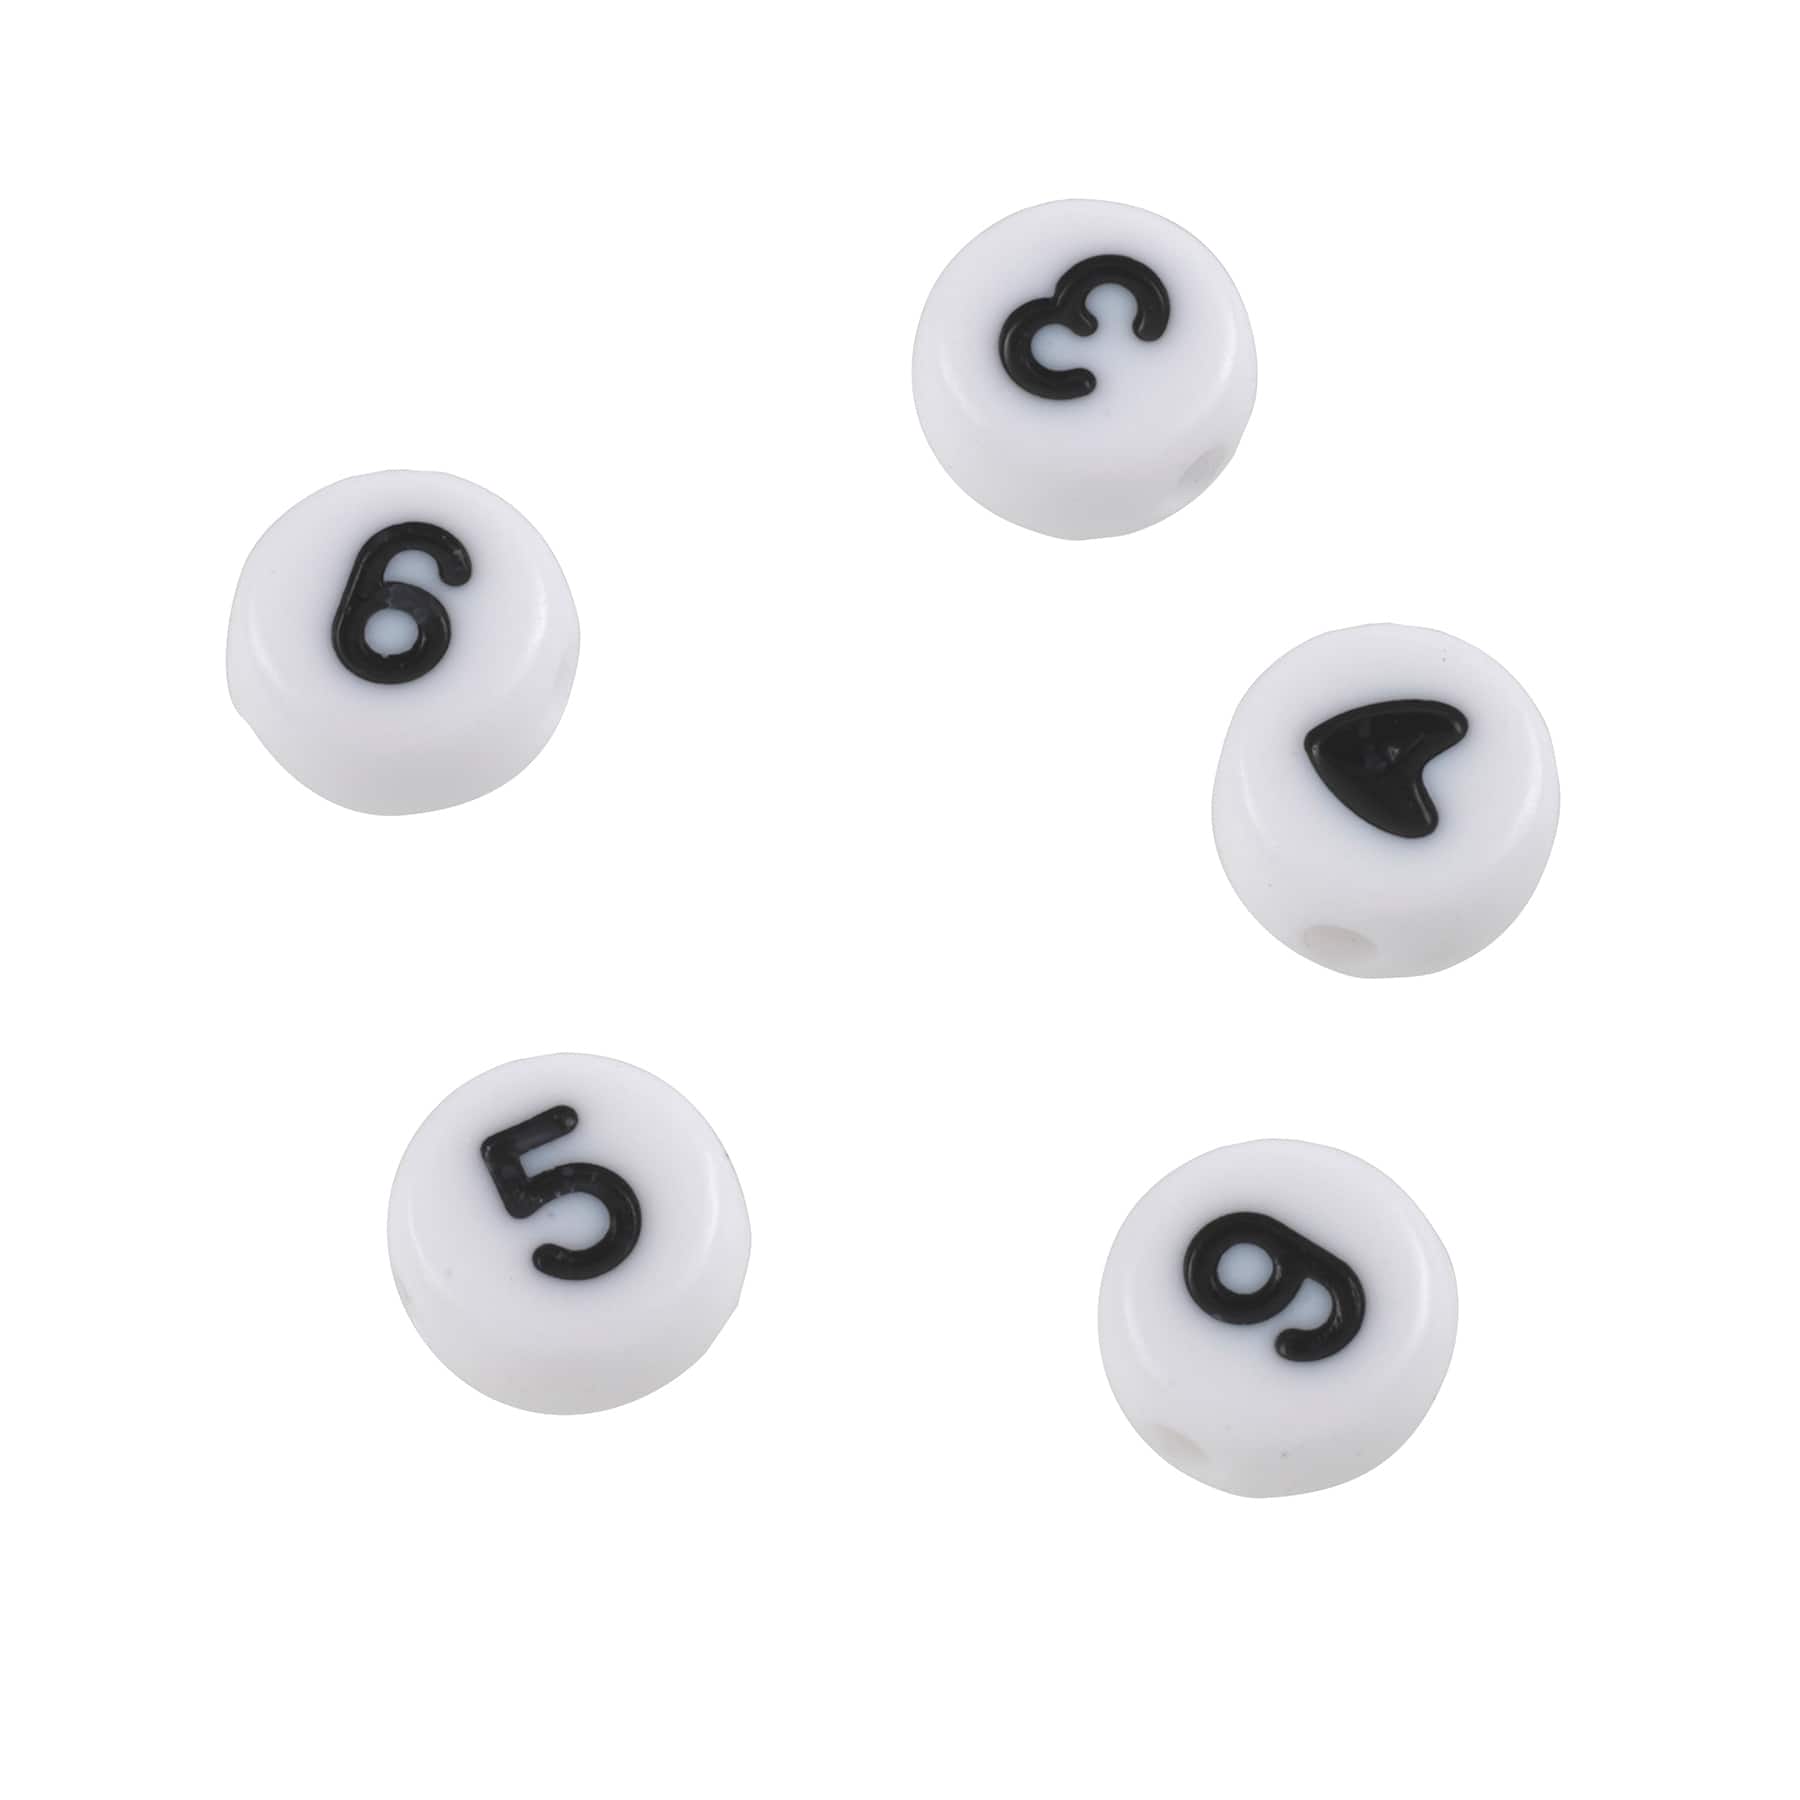 1690SV073BK - 10mm Number Beads - White / Black Letters - 1/4 Lb Value Pack